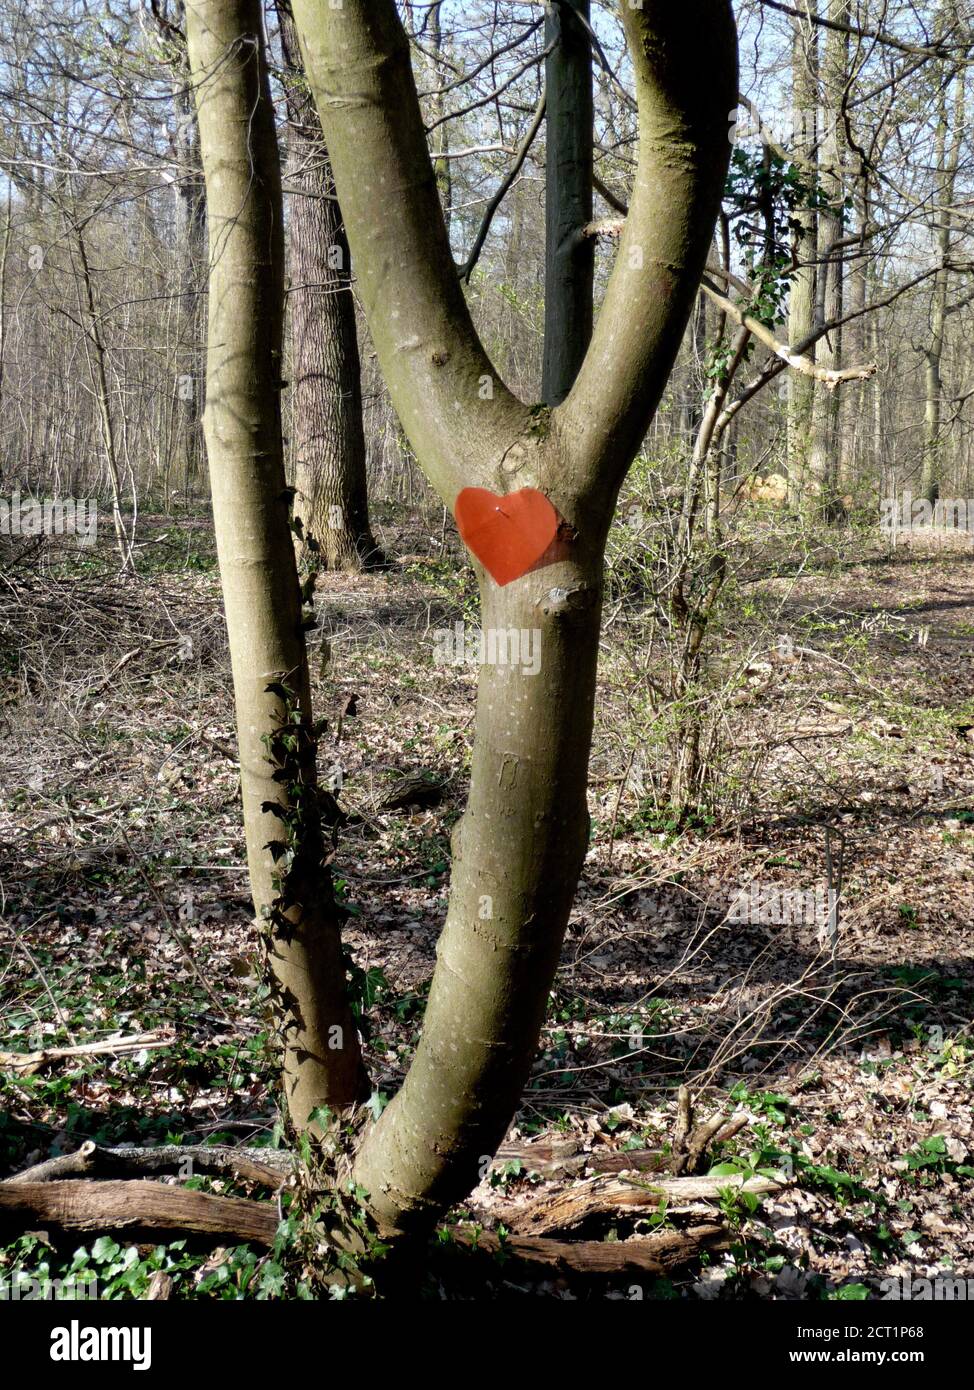 Saint-Germain-en-Laye, France- 03/05/2014: Arbre dans la forêt de Saint-Germain-en-Laye, France avec un coeur en papier rouge accroché au tronc. Banque D'Images